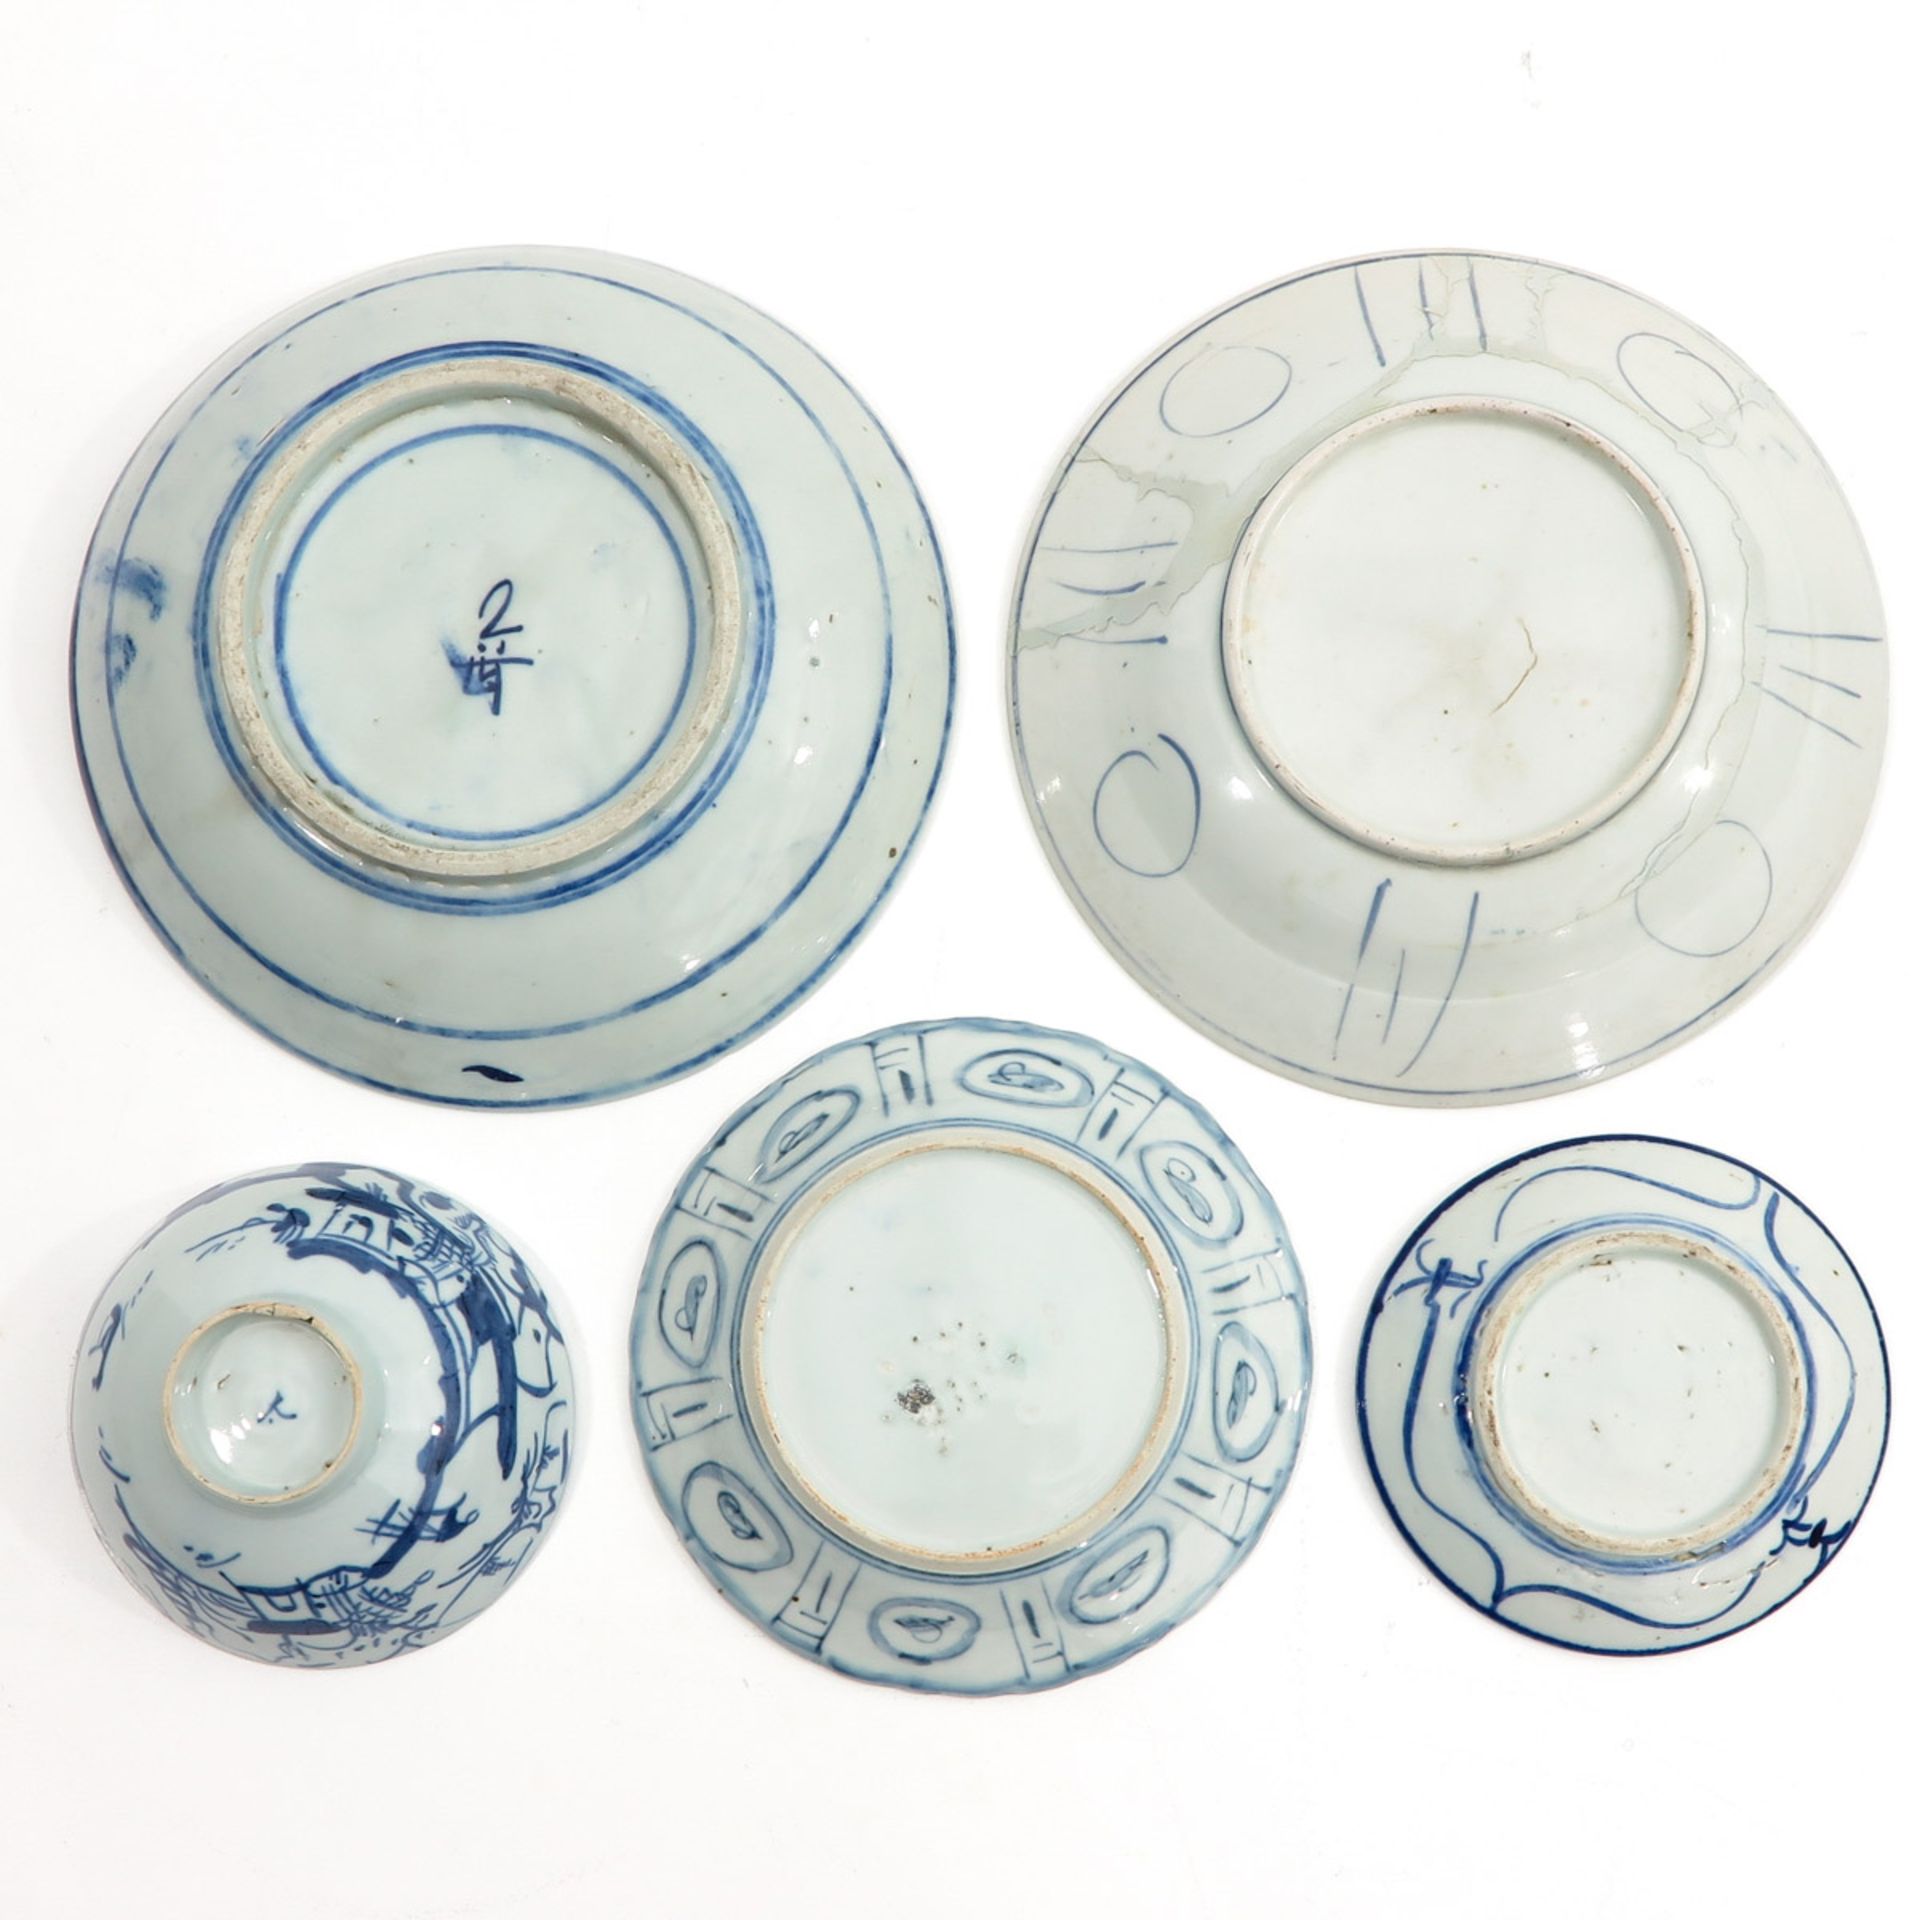 A Diverse Collection of Porcelain - Bild 2 aus 10